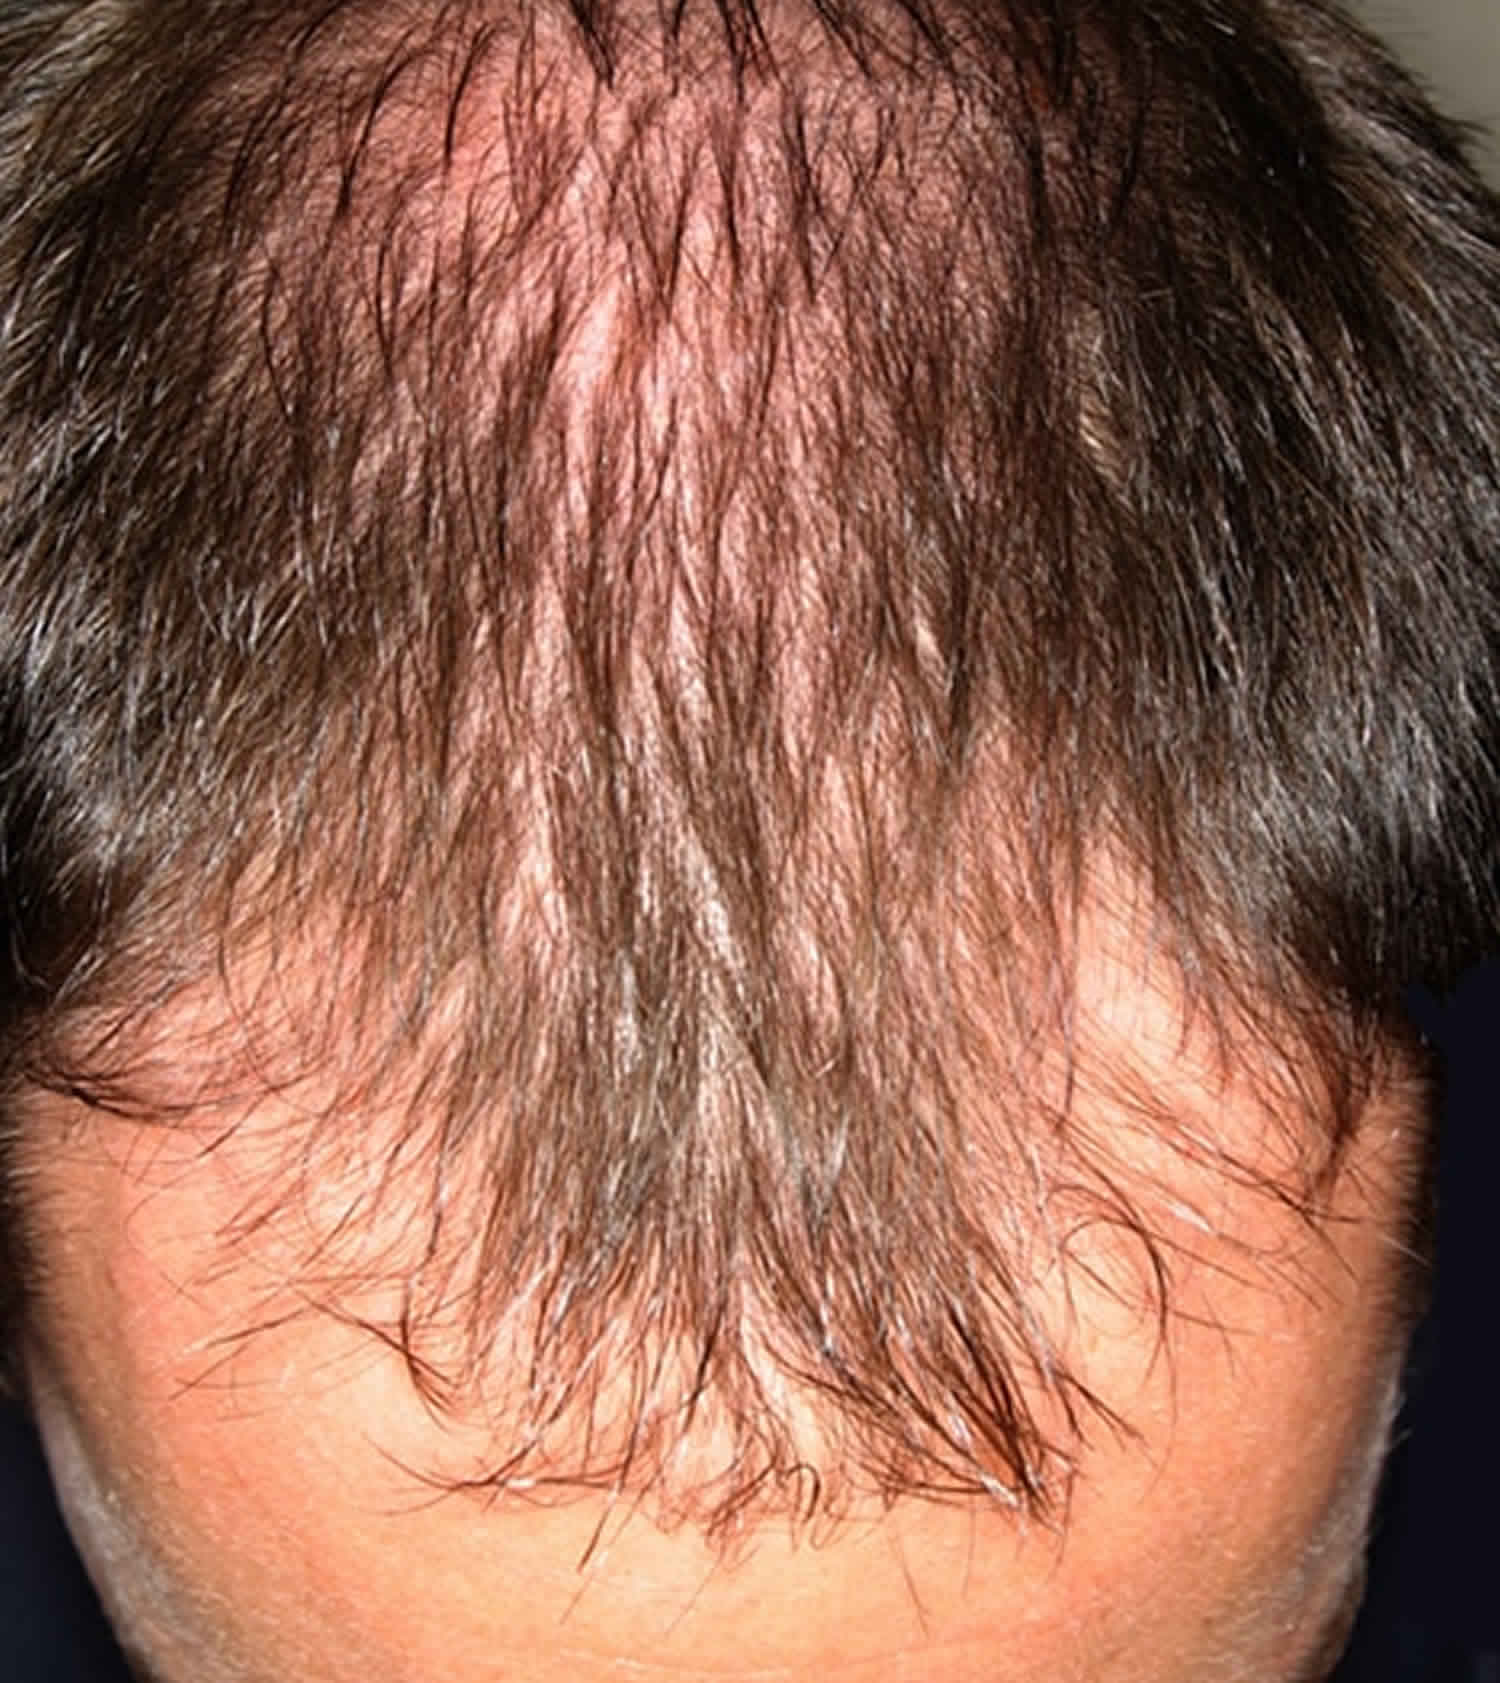 Толстый волос на голове. Андрогенная алопеция миноксидил. Очаговая алопеция (alopecia Areata).